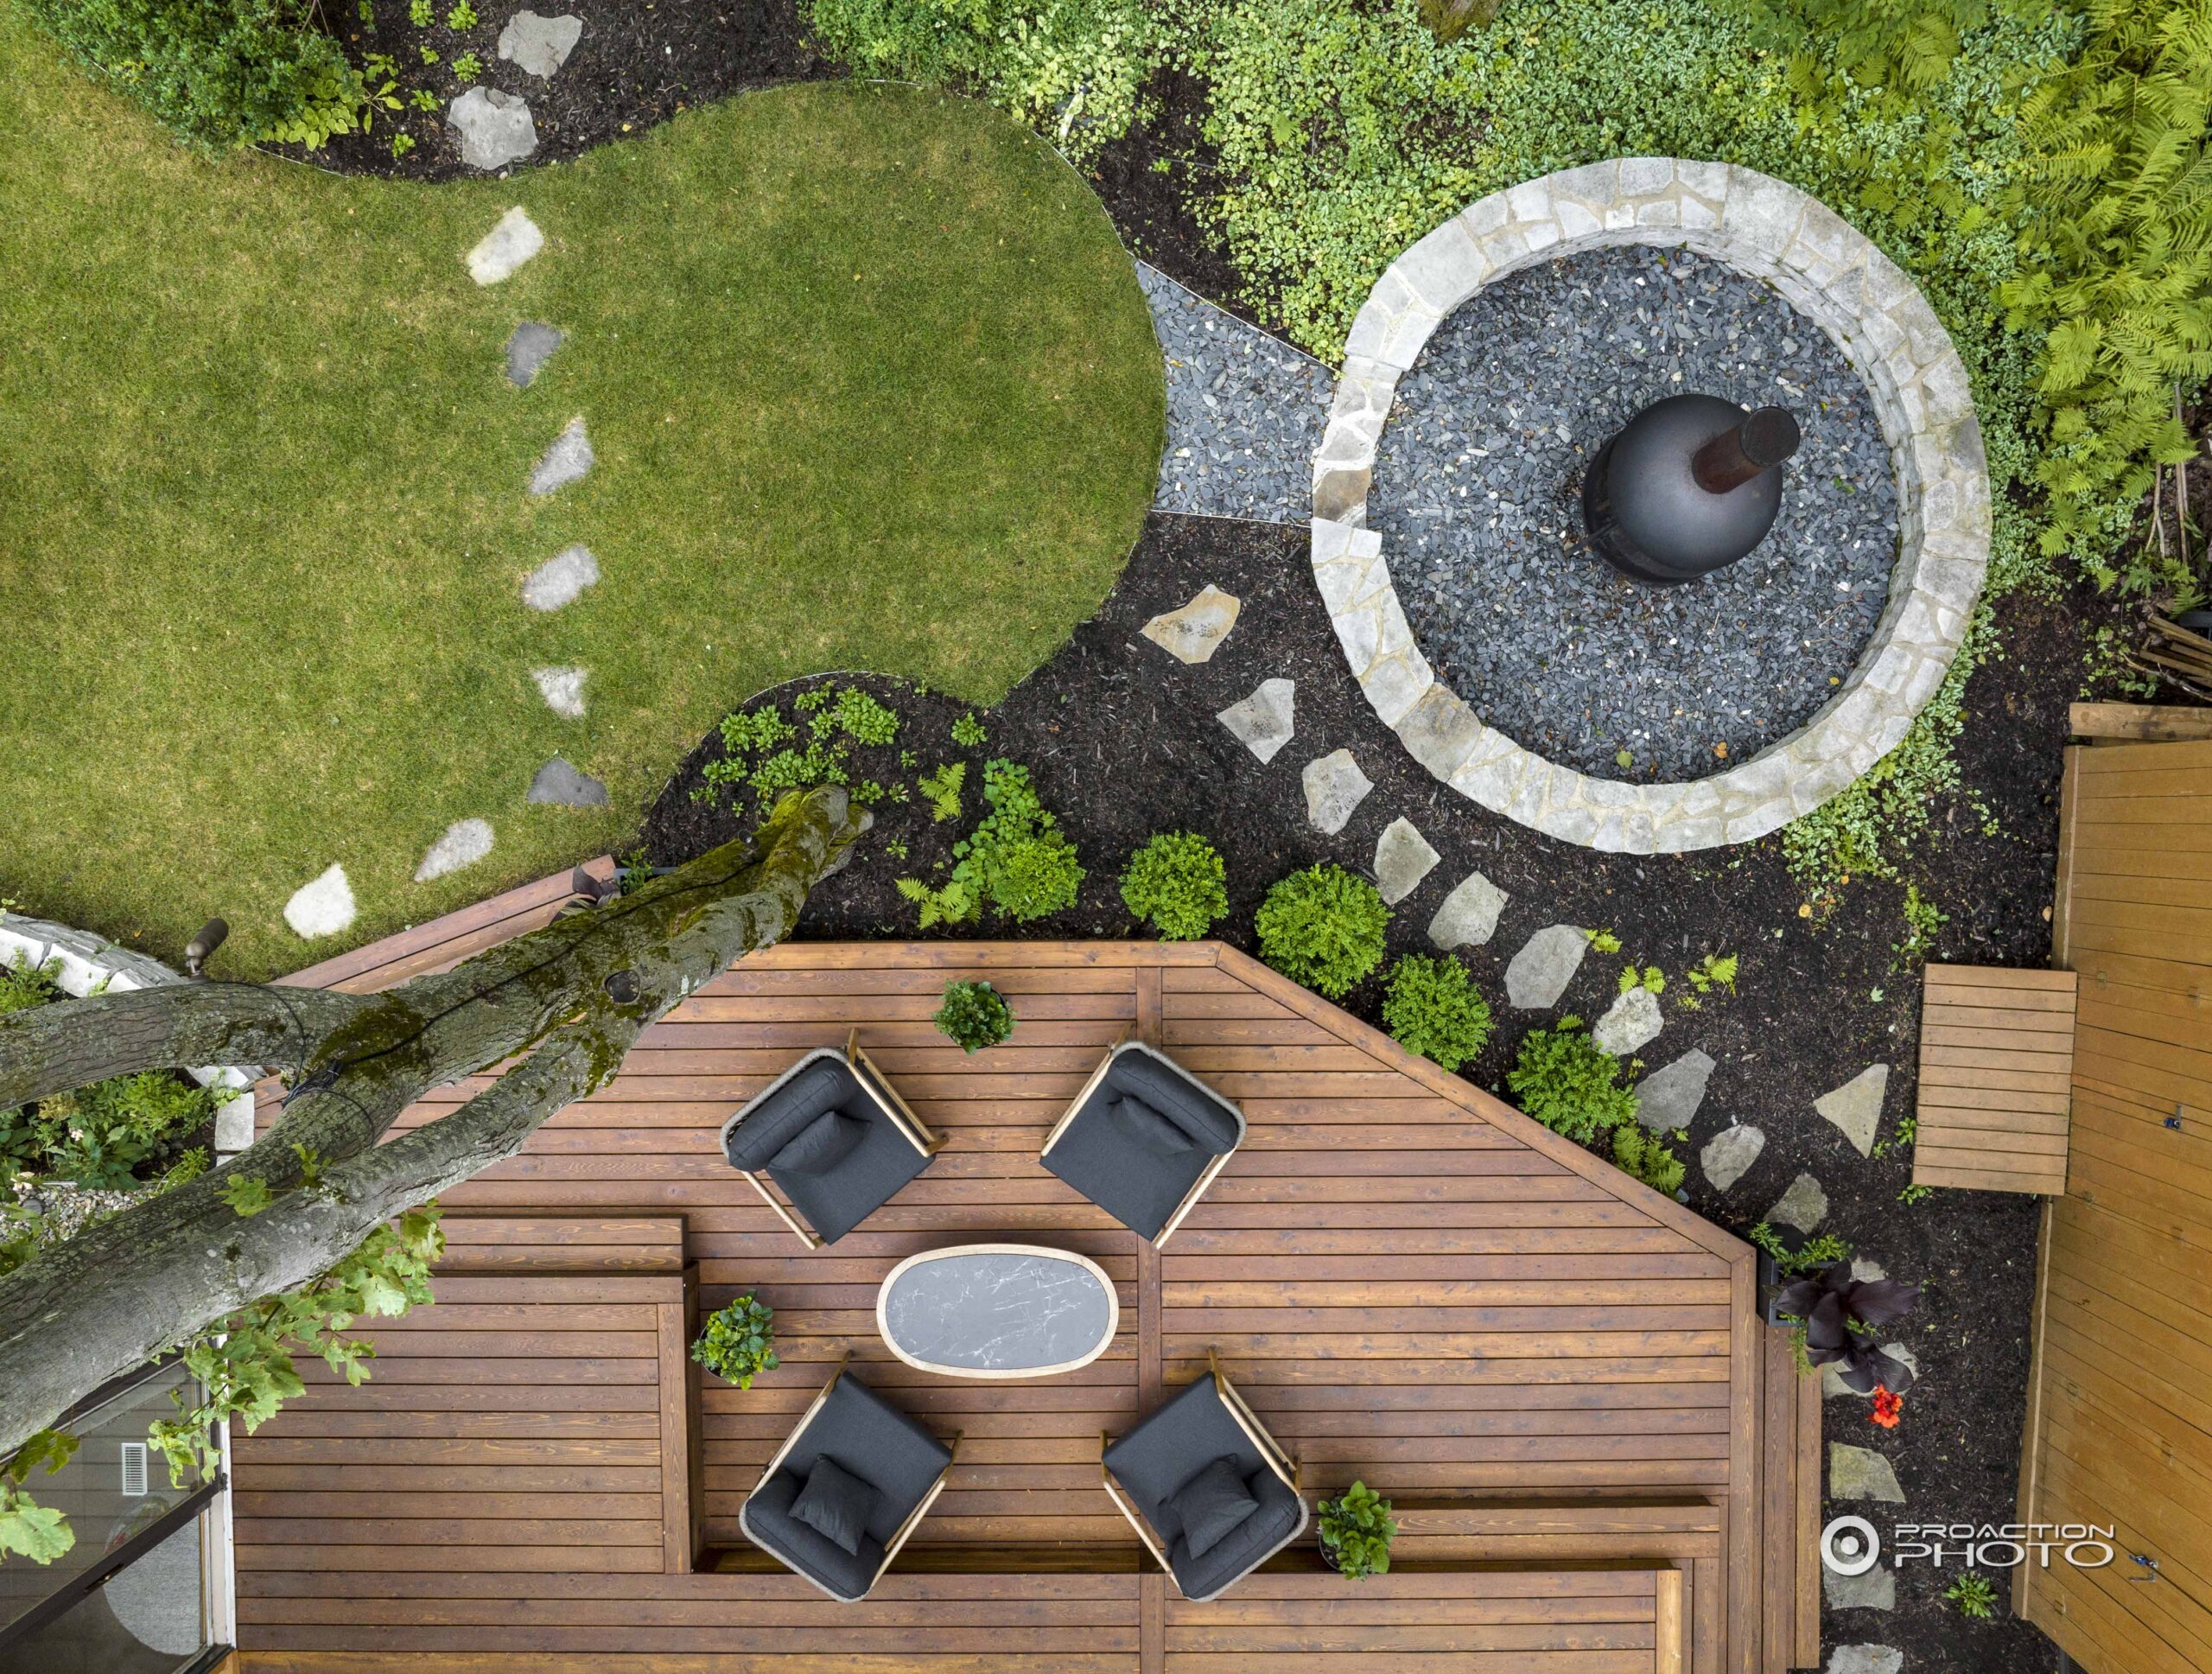 Vue aérienne d'une cour bien aménagée avec une grande terrasse en bois d'ipée